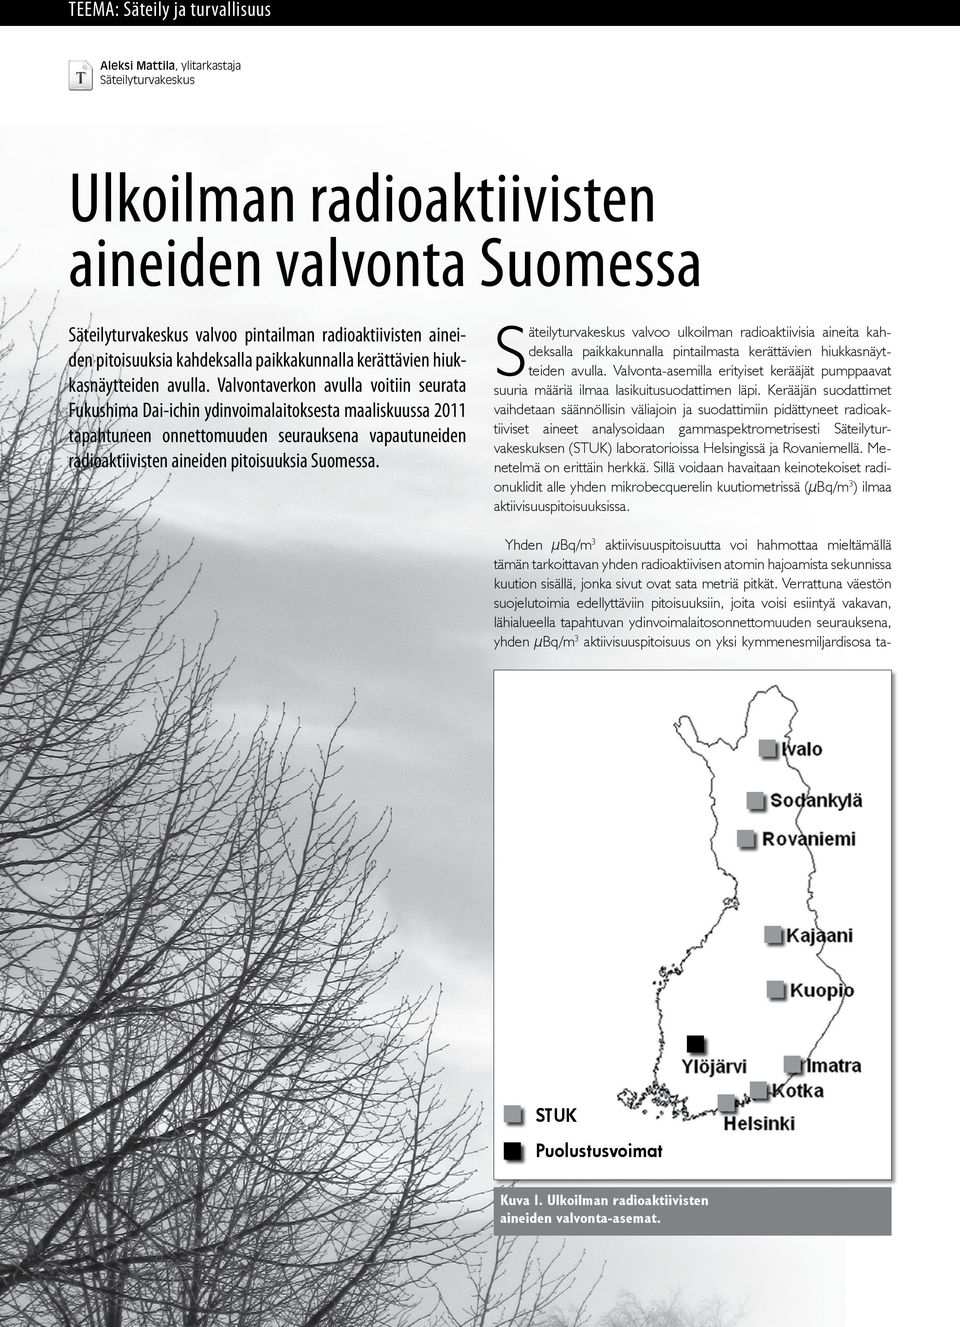 Valvontaverkon avulla voitiin seurata Fukushima Dai-ichin ydinvoimalaitoksesta maaliskuussa 2011 tapahtuneen onnettomuuden seurauksena vapautuneiden radioaktiivisten aineiden pitoisuuksia Suomessa.